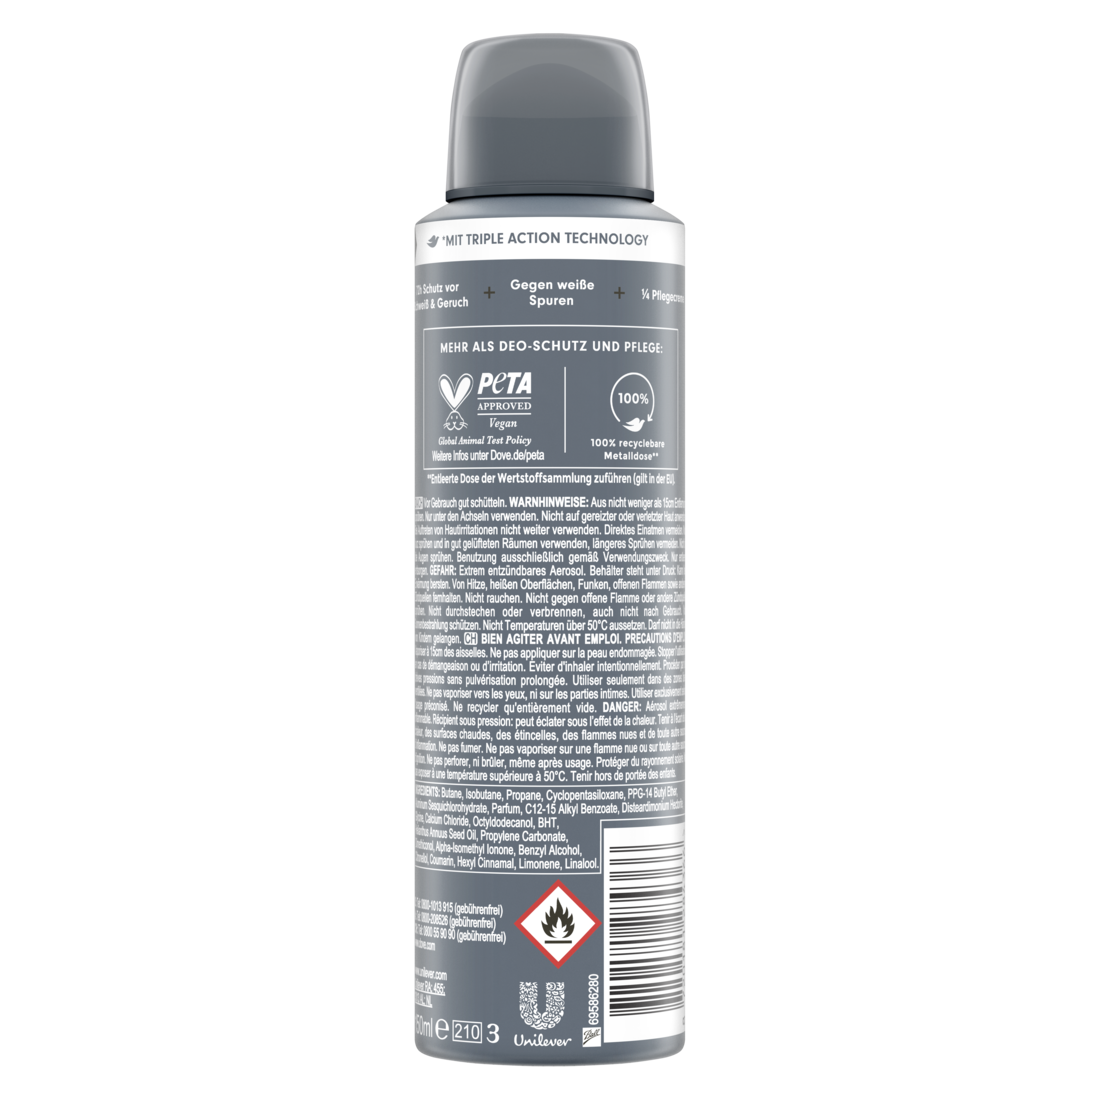 Advanced Anti-Transpirant Invisible Dry gegen weiße Spuren schützt 72 Stunden vor Körpergeruch und Schweiß 150 ml